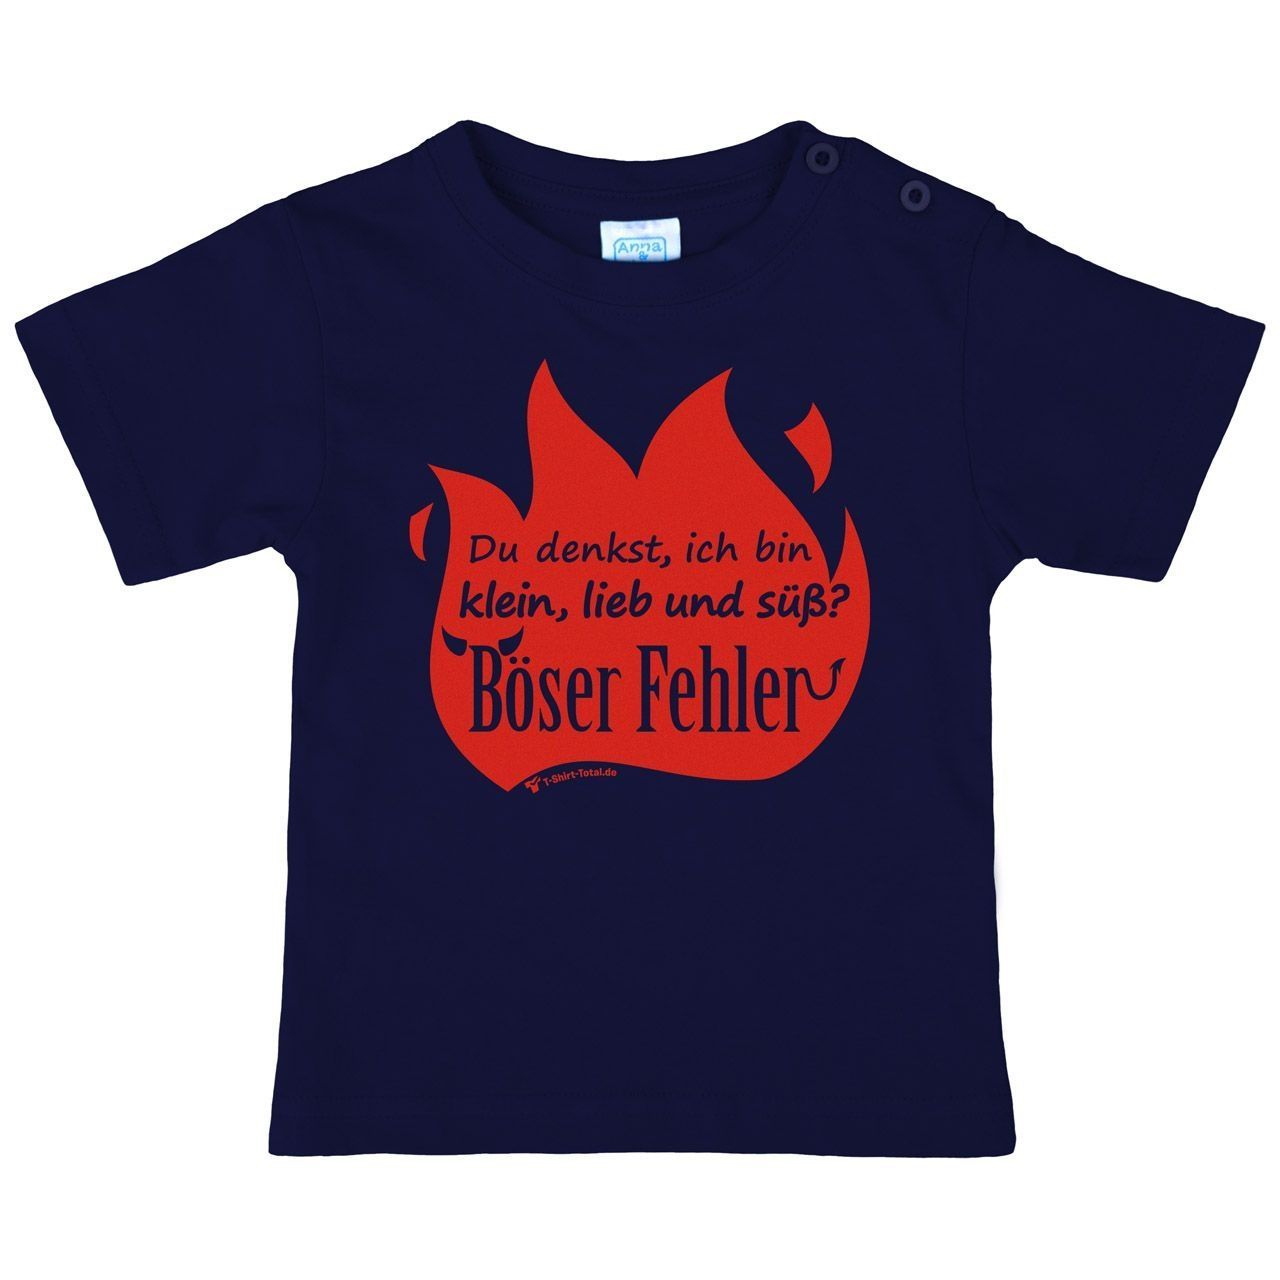 Böser Fehler Kinder T-Shirt navy 68 / 74